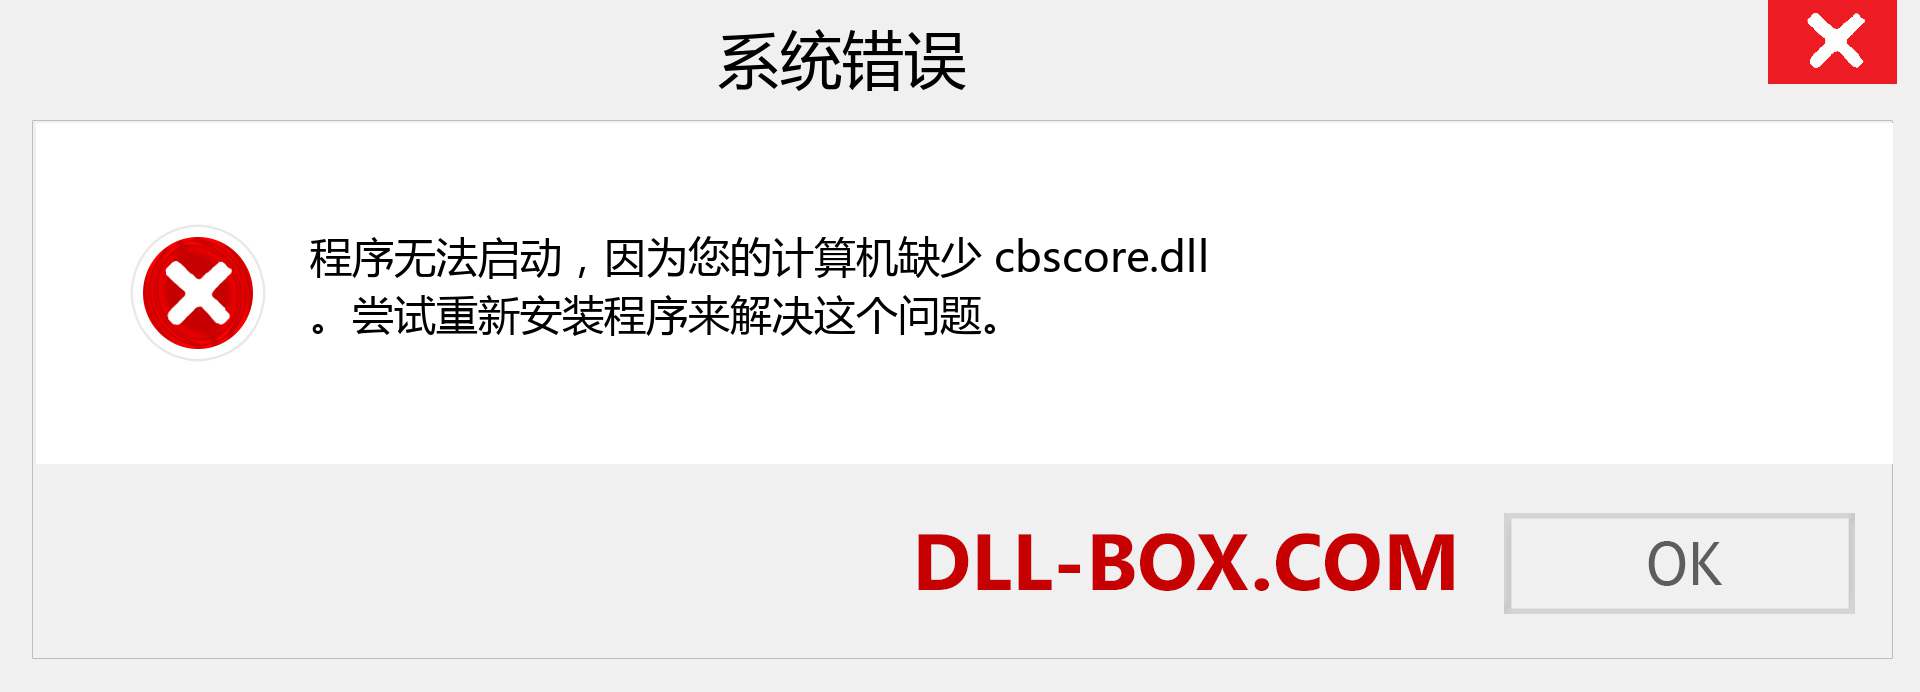 cbscore.dll 文件丢失？。 适用于 Windows 7、8、10 的下载 - 修复 Windows、照片、图像上的 cbscore dll 丢失错误